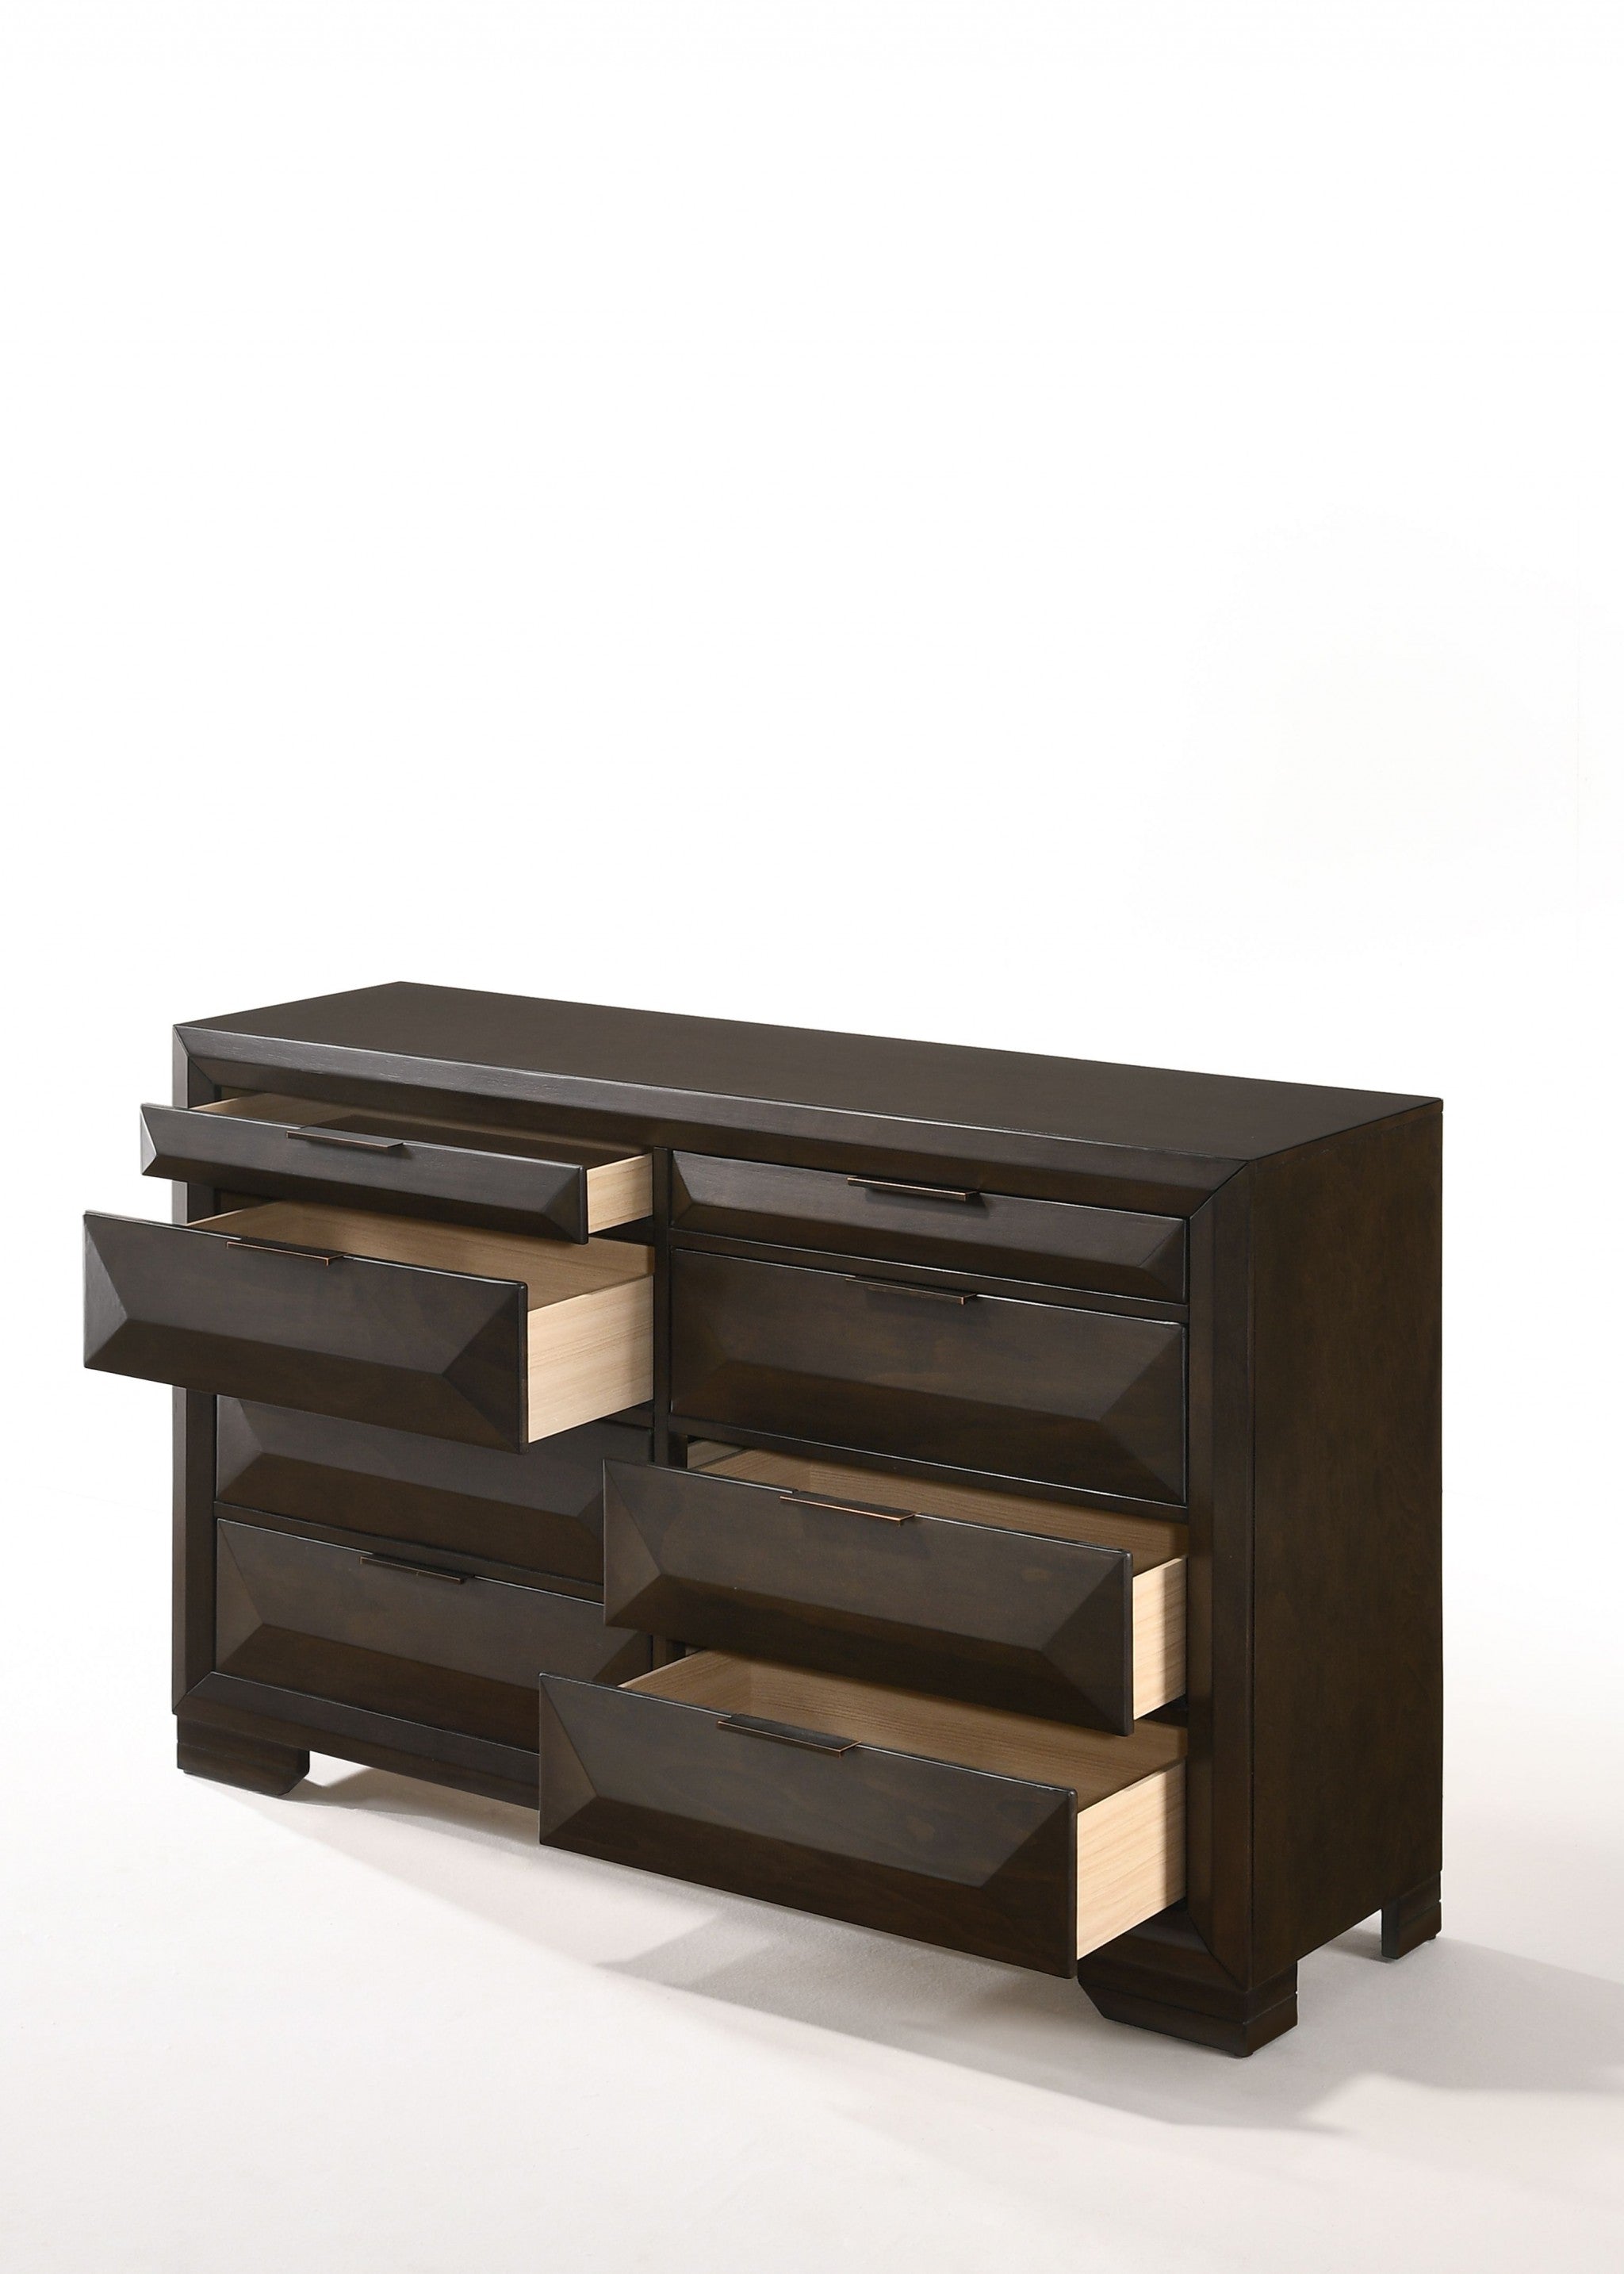 59" Espresso Solid Wood Standard Dresser/Chest